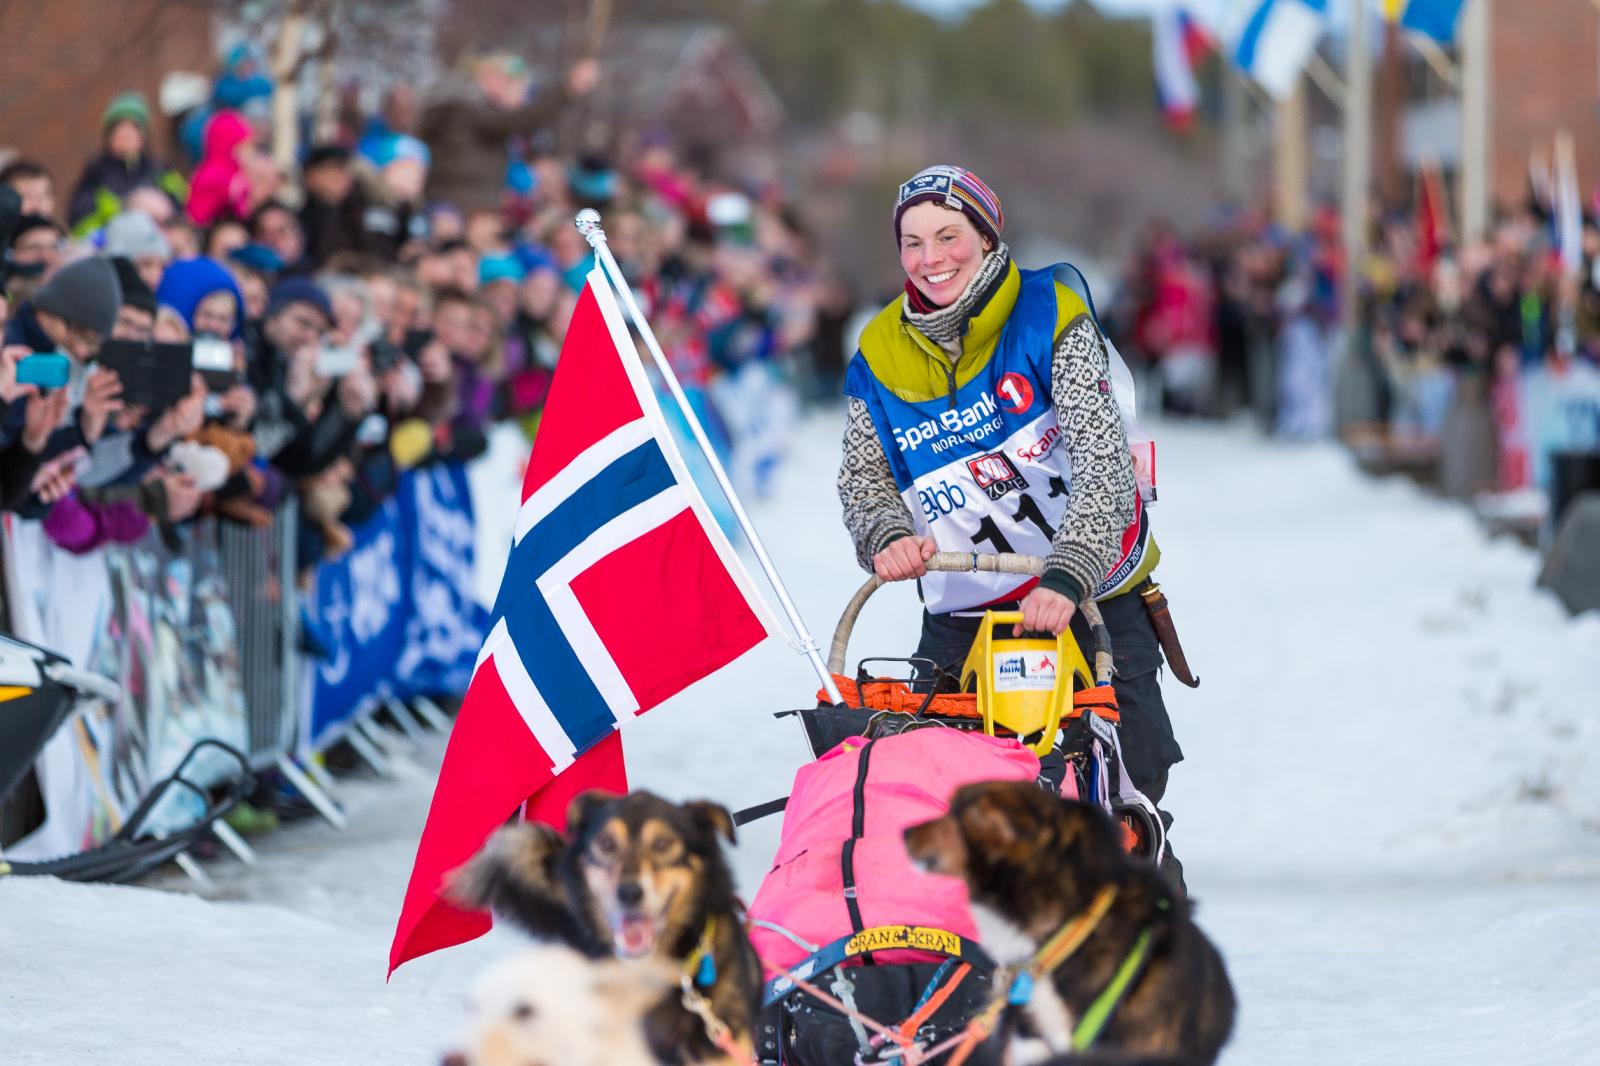 SUVERENE EKRAN: Sigrid Ekran har vunnet FL-1000 både i 2014 og 2015. Foto: Mads Suhr Pettersen.